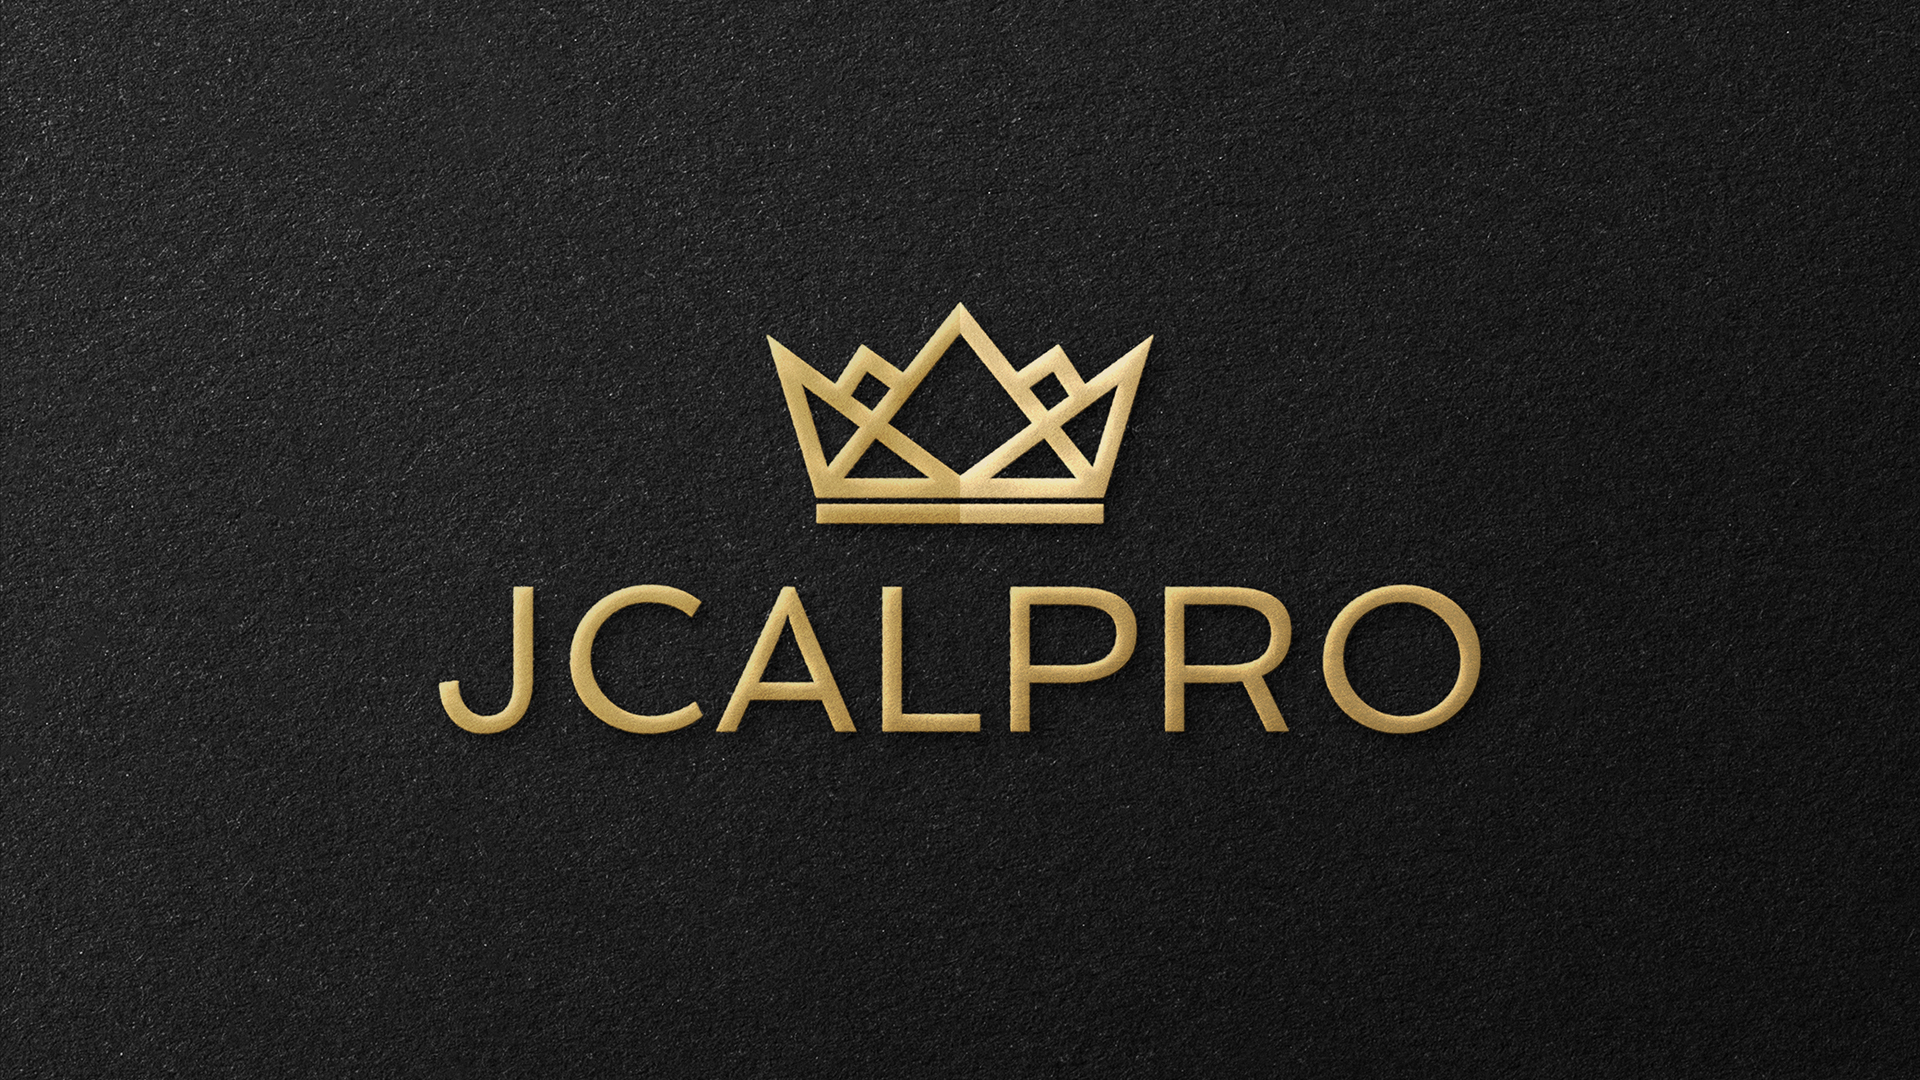 Jcalpro_mockup-1-1.jpg